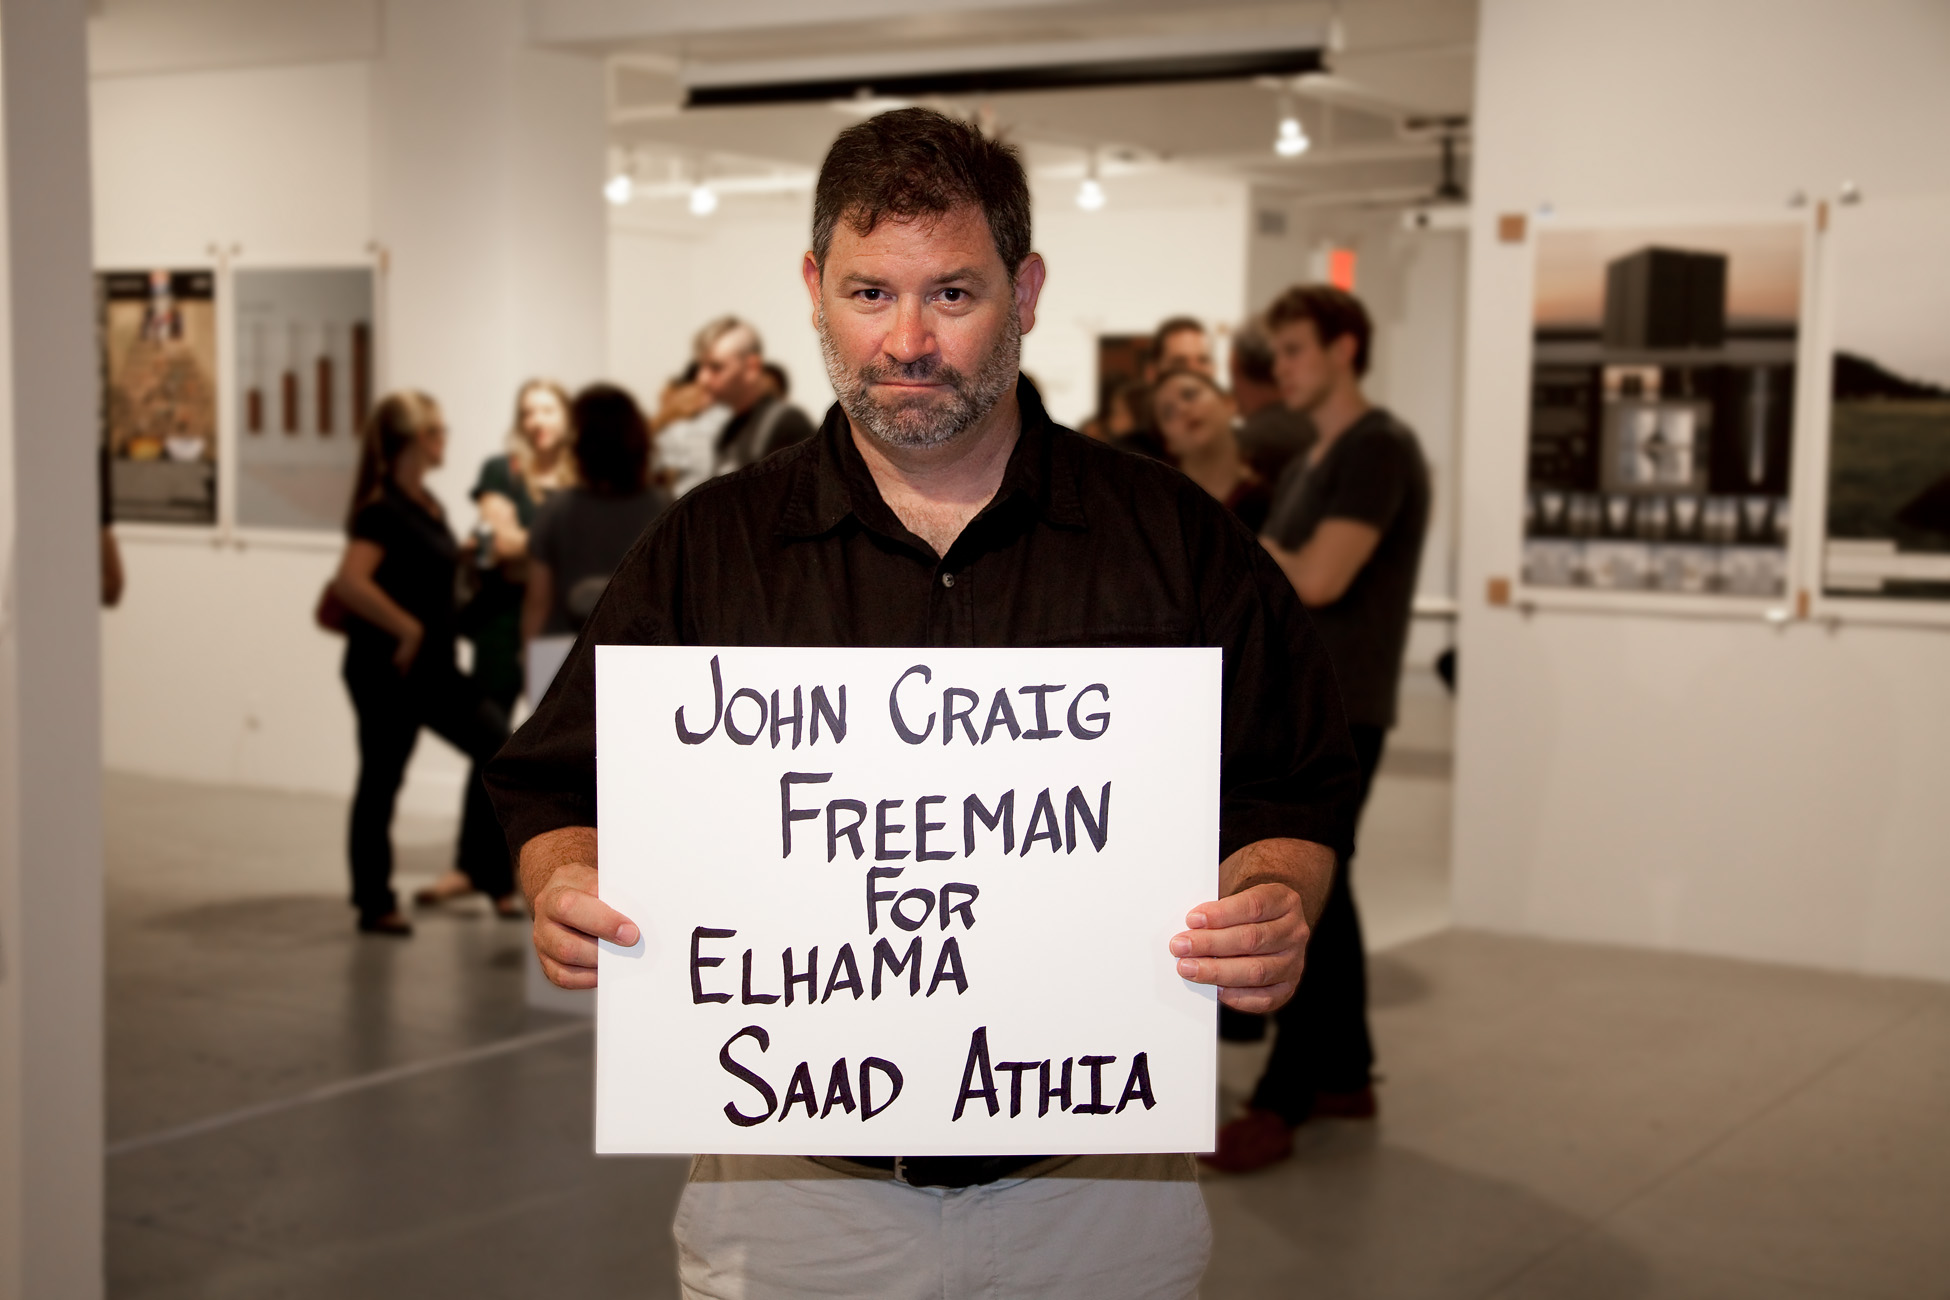 John Craig Freeman for Elhama Saad Athia